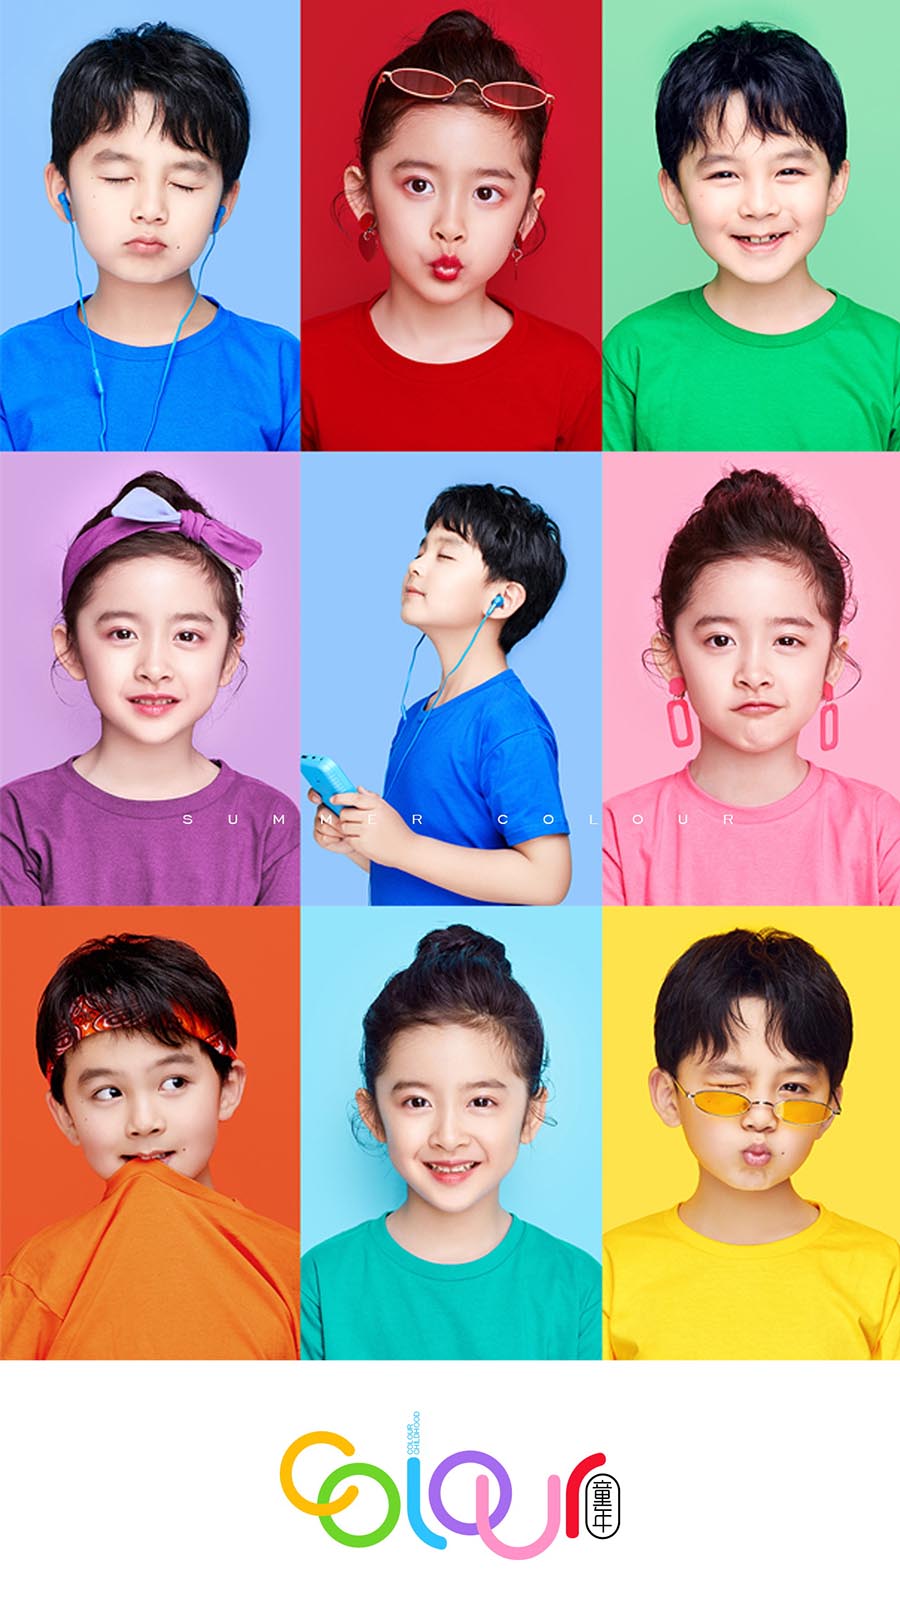 儿童face表情照样片，照相馆色彩主题吸睛表情样照，儿童纯色背景形象照